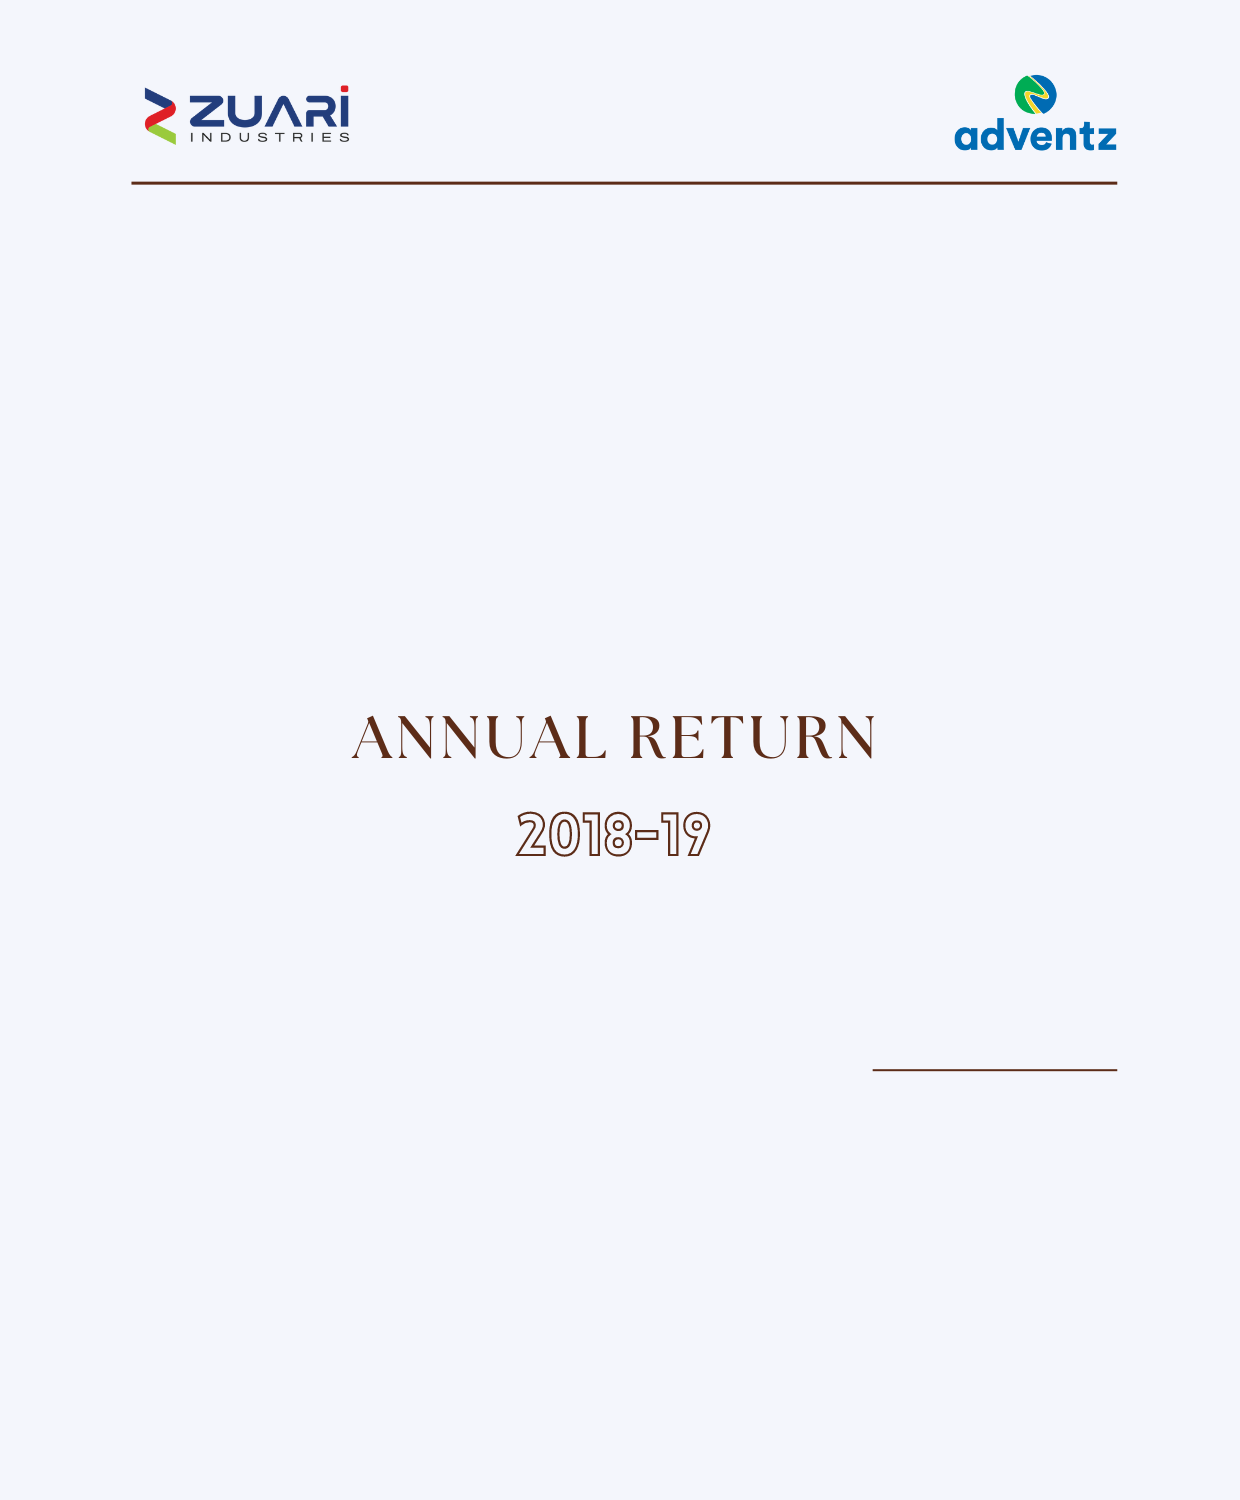 Annual return 2018-19 (Form MGT-9)